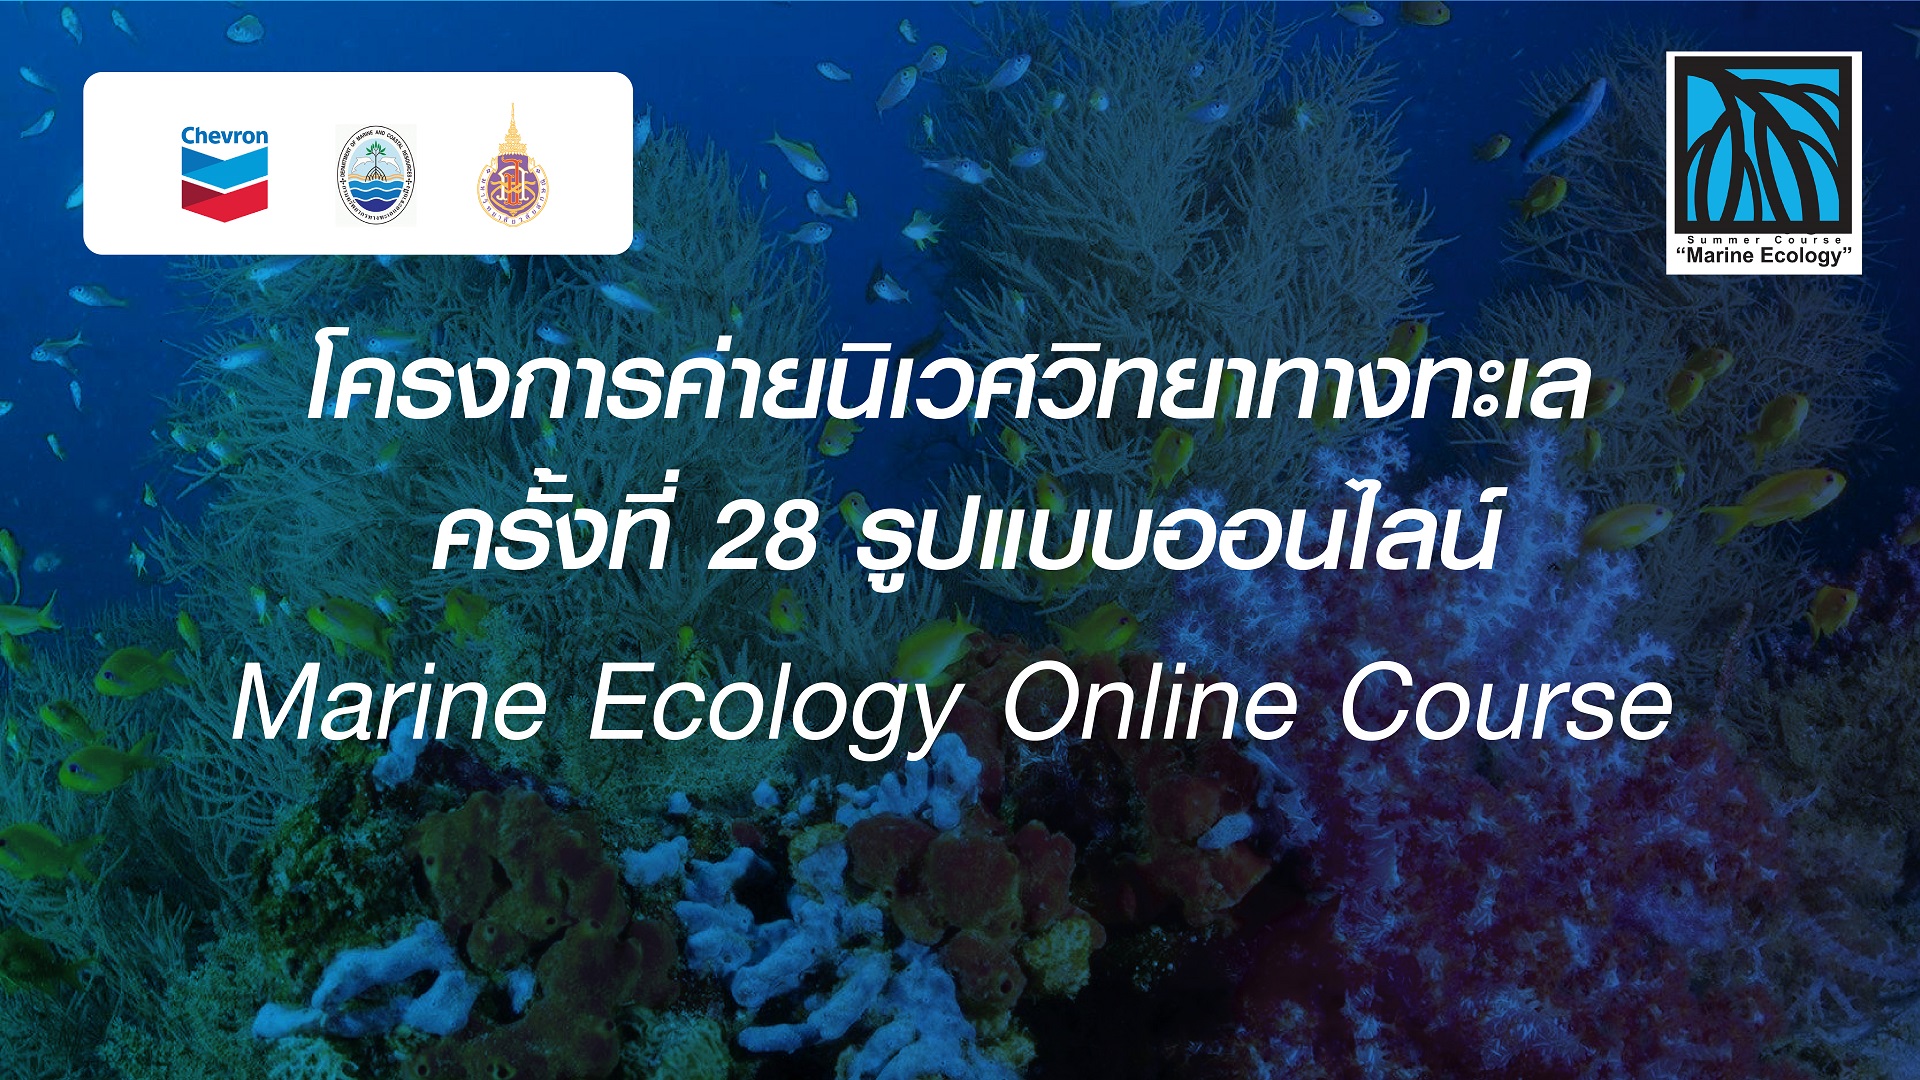 ศูนย์บริการวิชาการ มหาวิทยาลัยวลัยลักษณ์ ขอเชิญน้องๆ นักศึกษาเข้าร่วมโครงการค่ายนิเวศวิทยาทางทะเล ครั้งที่ 28 รูปแบบออนไลน์ (Marine Ecology Online Course)